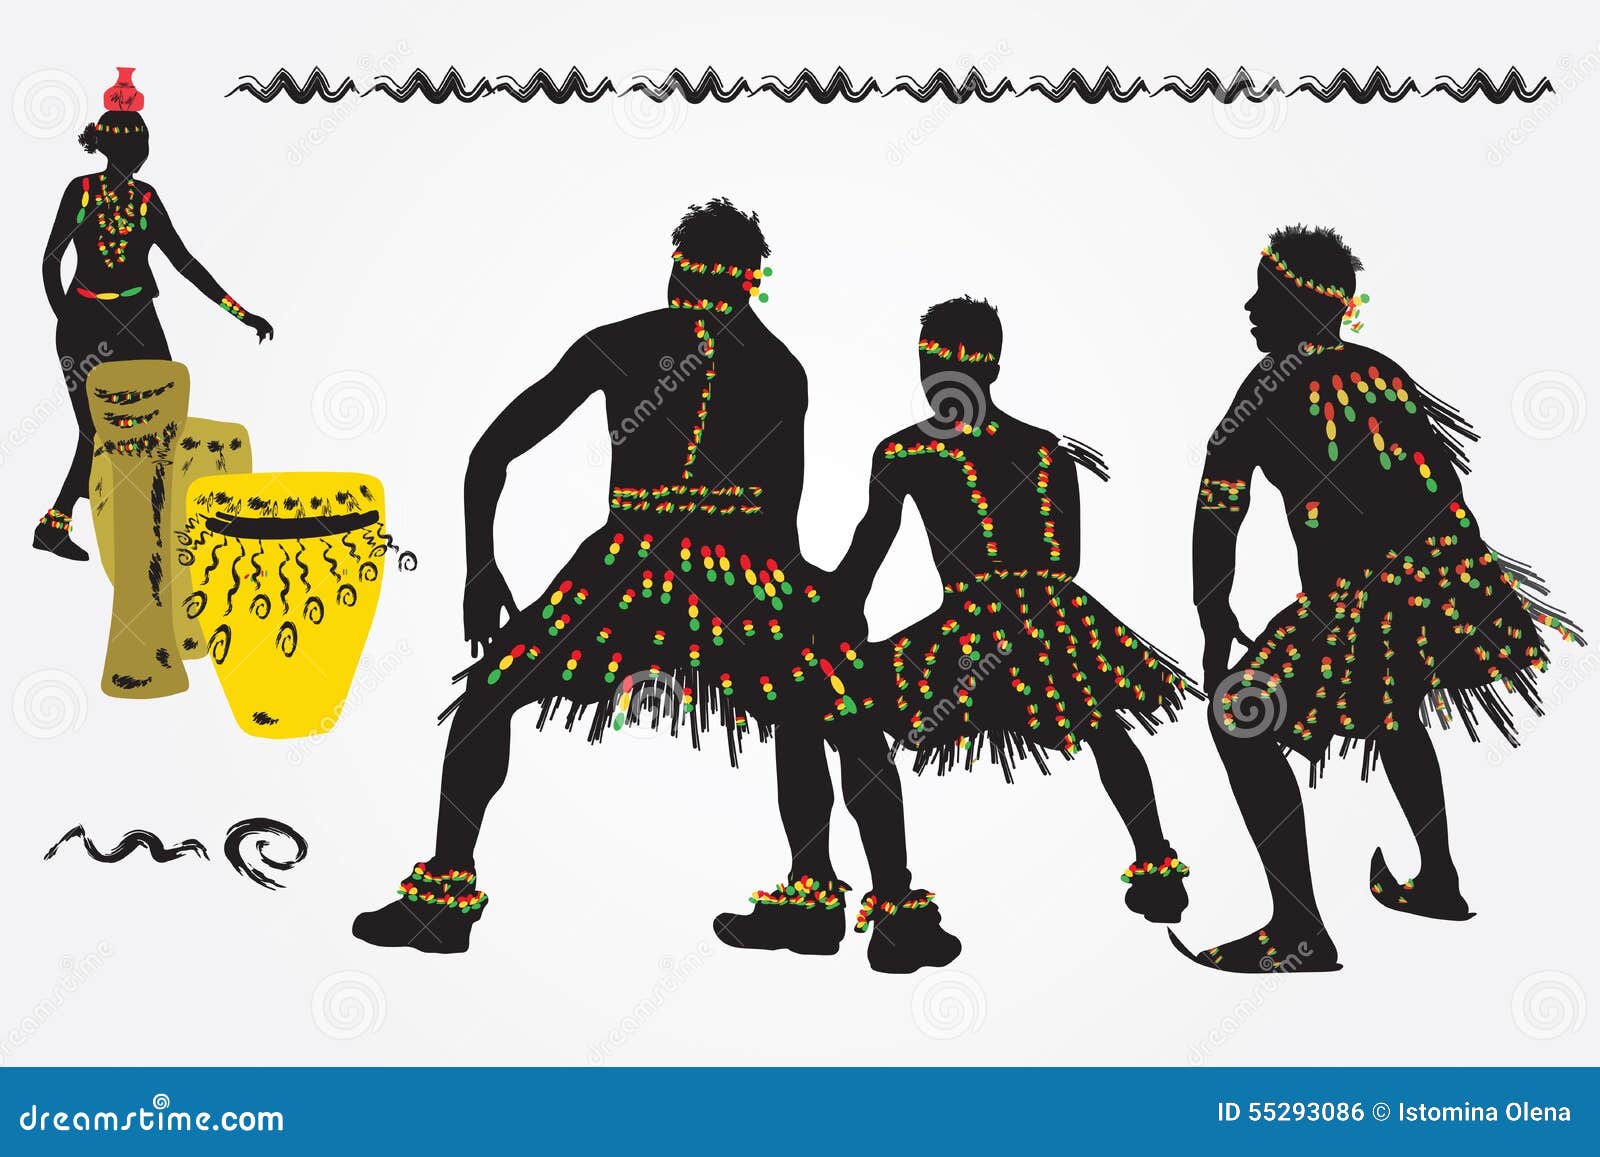 卡通非洲日民族舞蹈素材下载